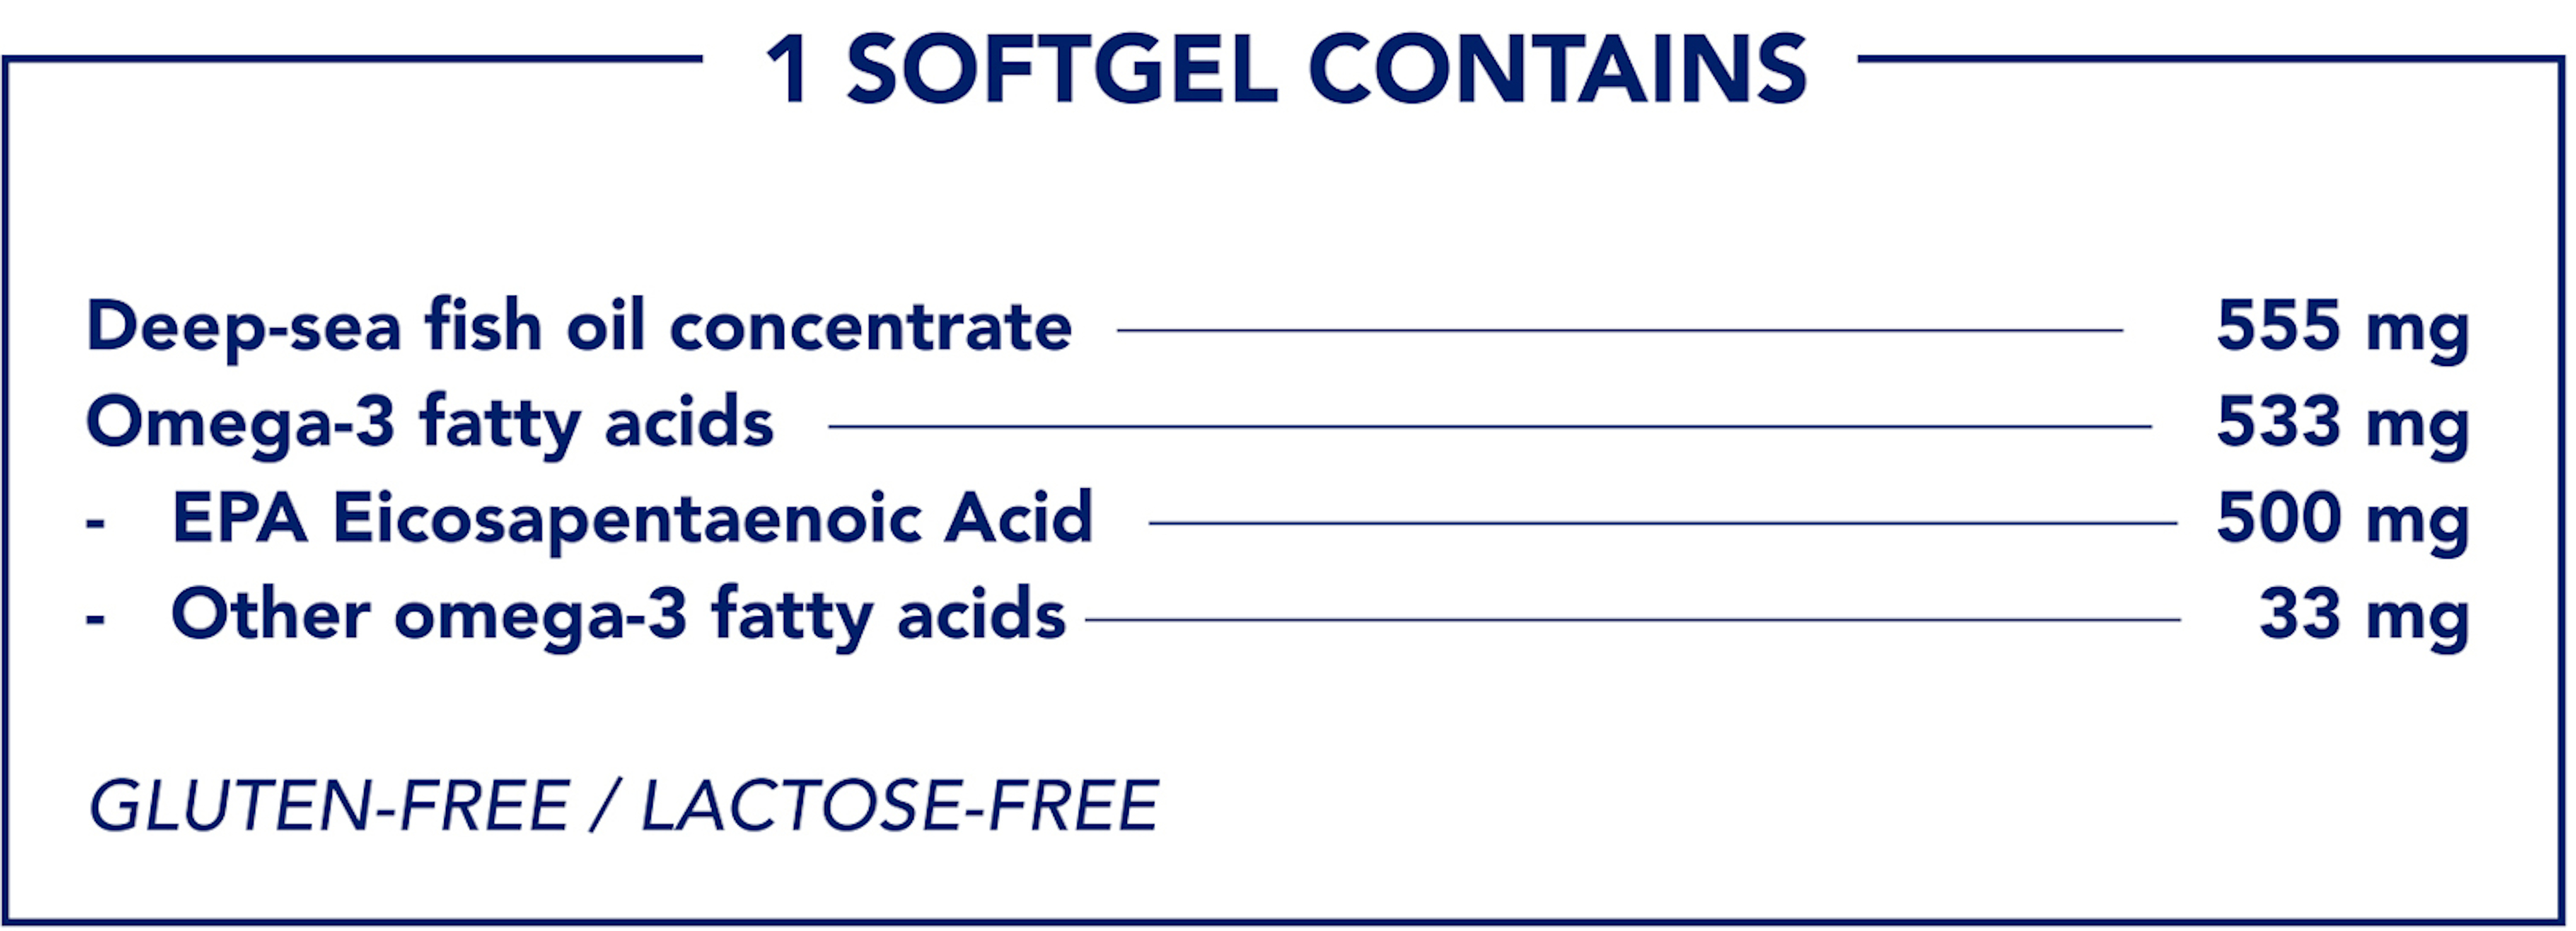 1 SOFTGEL CONTAINS:
                          Deep-sea fish oil concentrate 555 mg
                          Omega-3 fatty acids 533 mg
                          EPA Eicosapentaenoic Acid 500 mg
                          Other omega-3 fatty acids 33 mg
                          GLUTEN-FREE/ LACTOSE-FREE